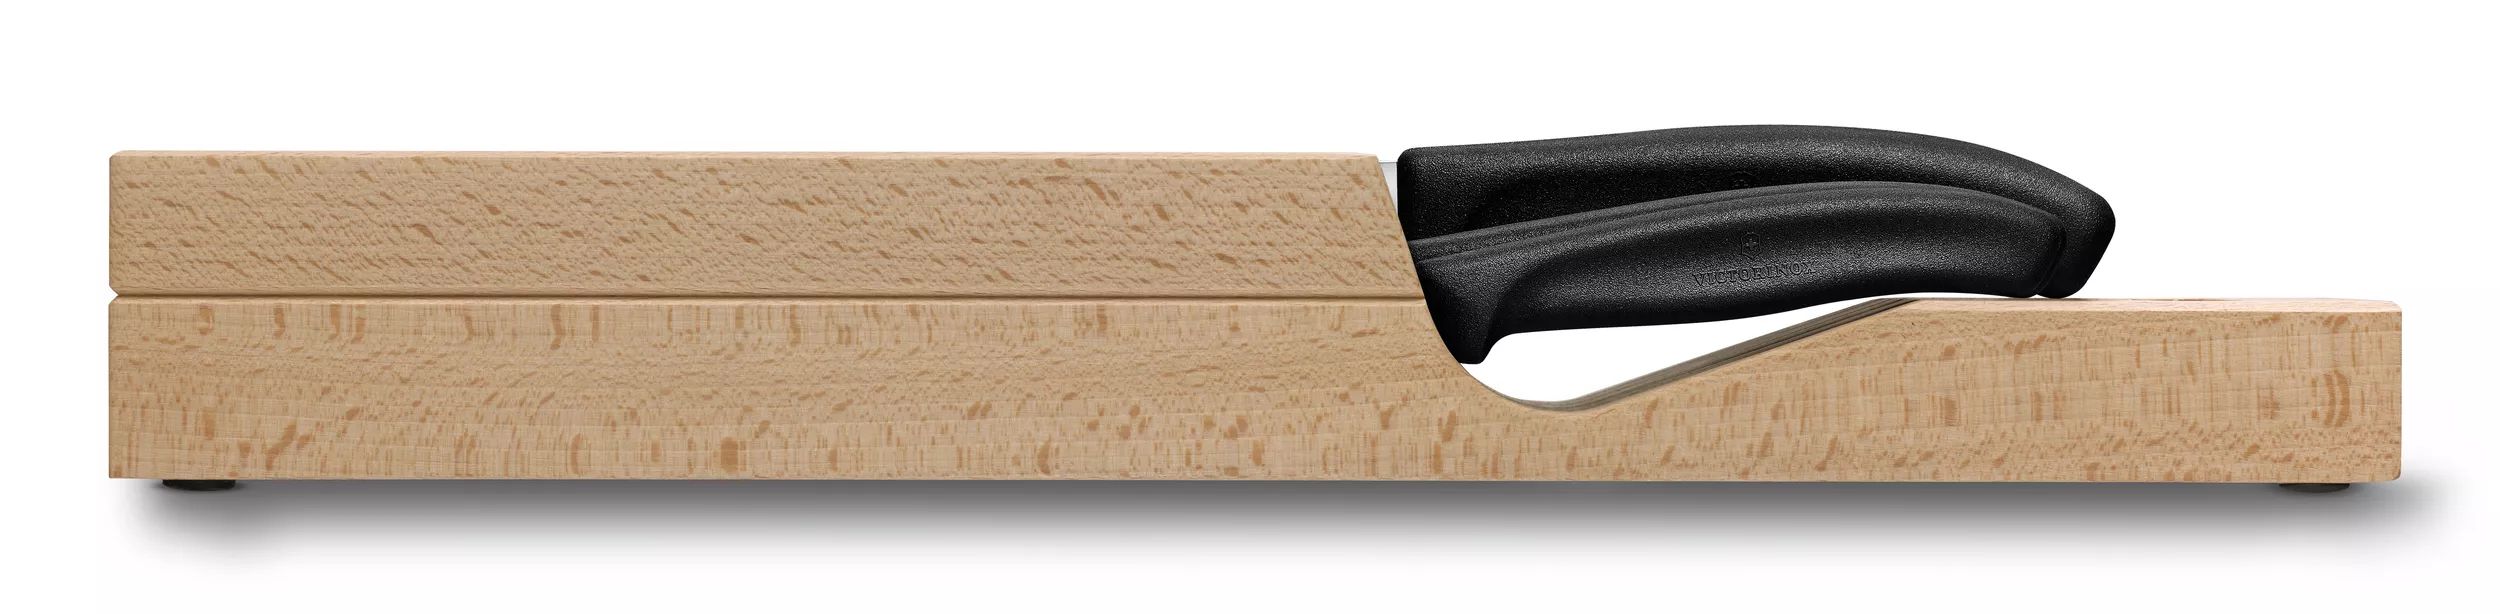 Range-couteaux Swiss Classic pour tiroir - 6.7143.5